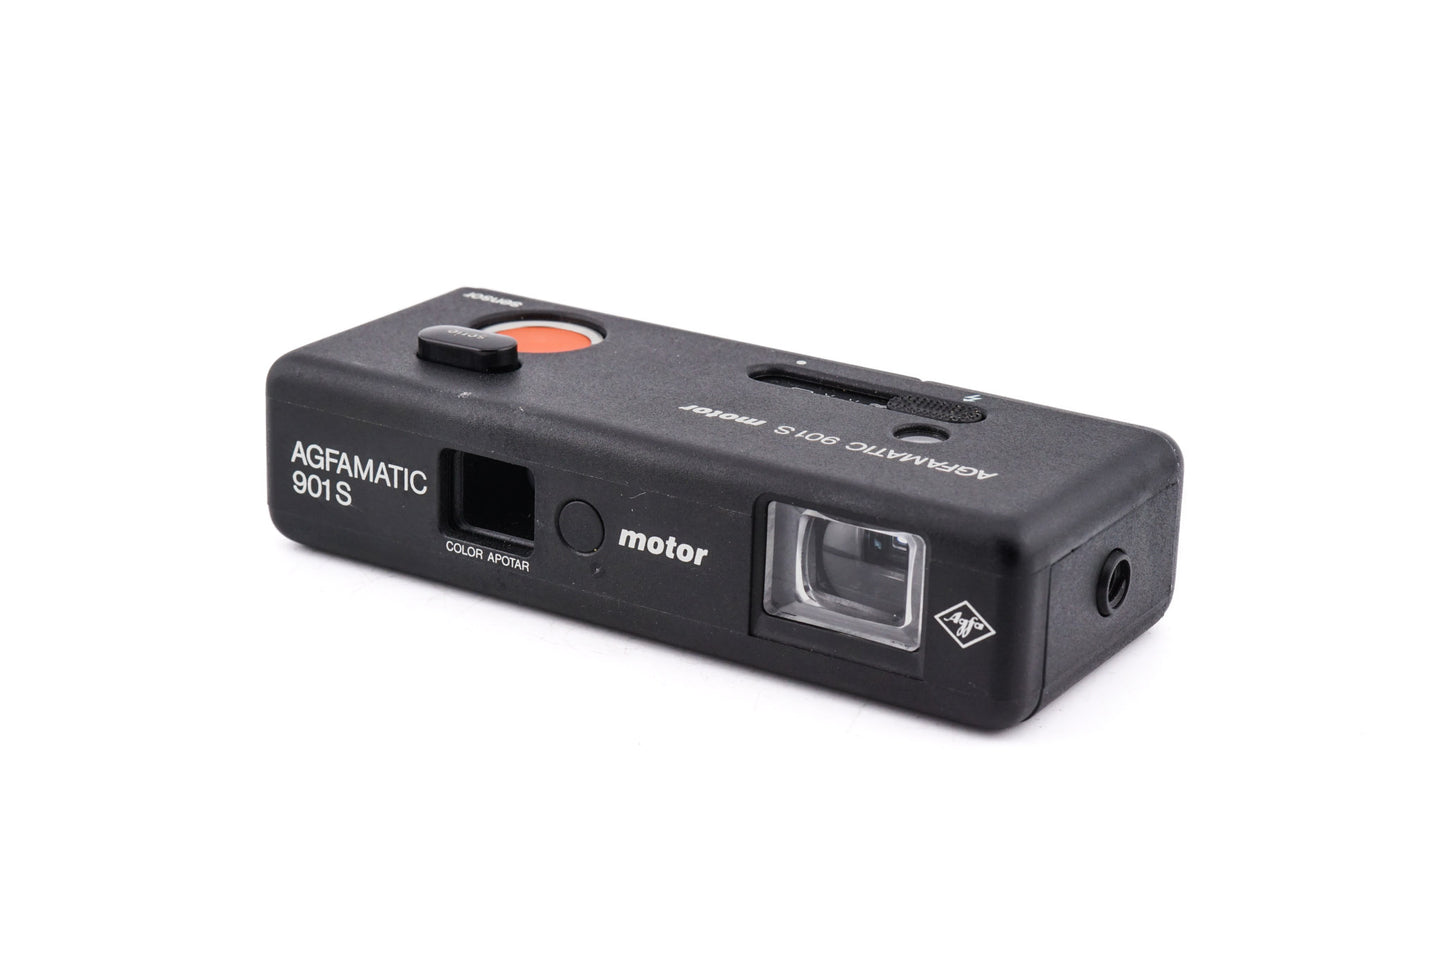 Agfa Agfamatic 901S Motor Sensor - Camera